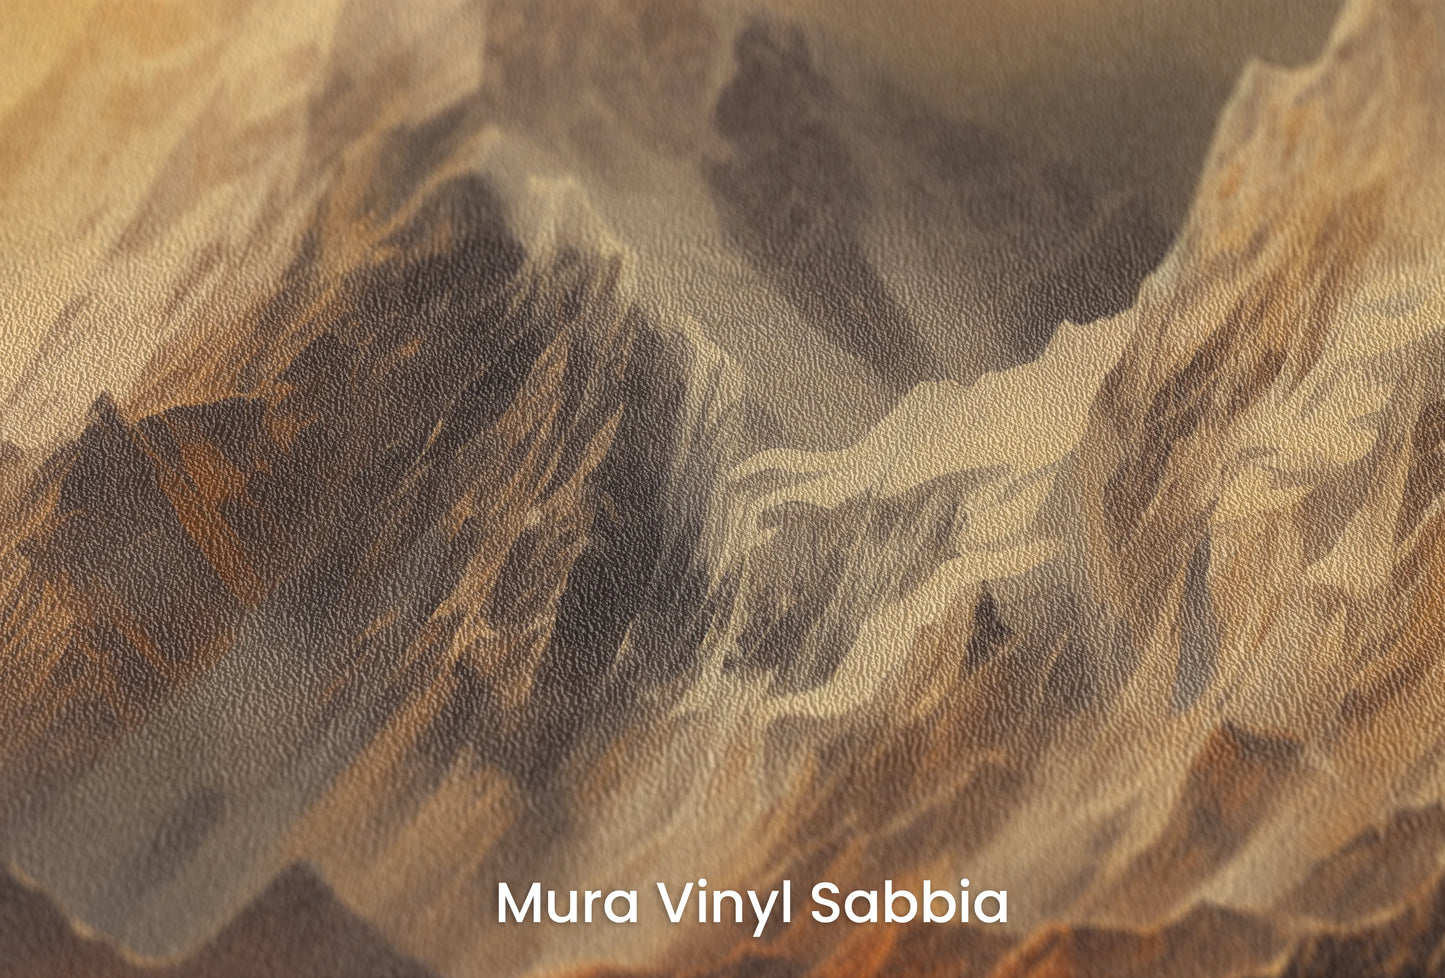 Zbliżenie na artystyczną fototapetę o nazwie Golden Mountain Glow na podłożu Mura Vinyl Sabbia struktura grubego ziarna piasku.